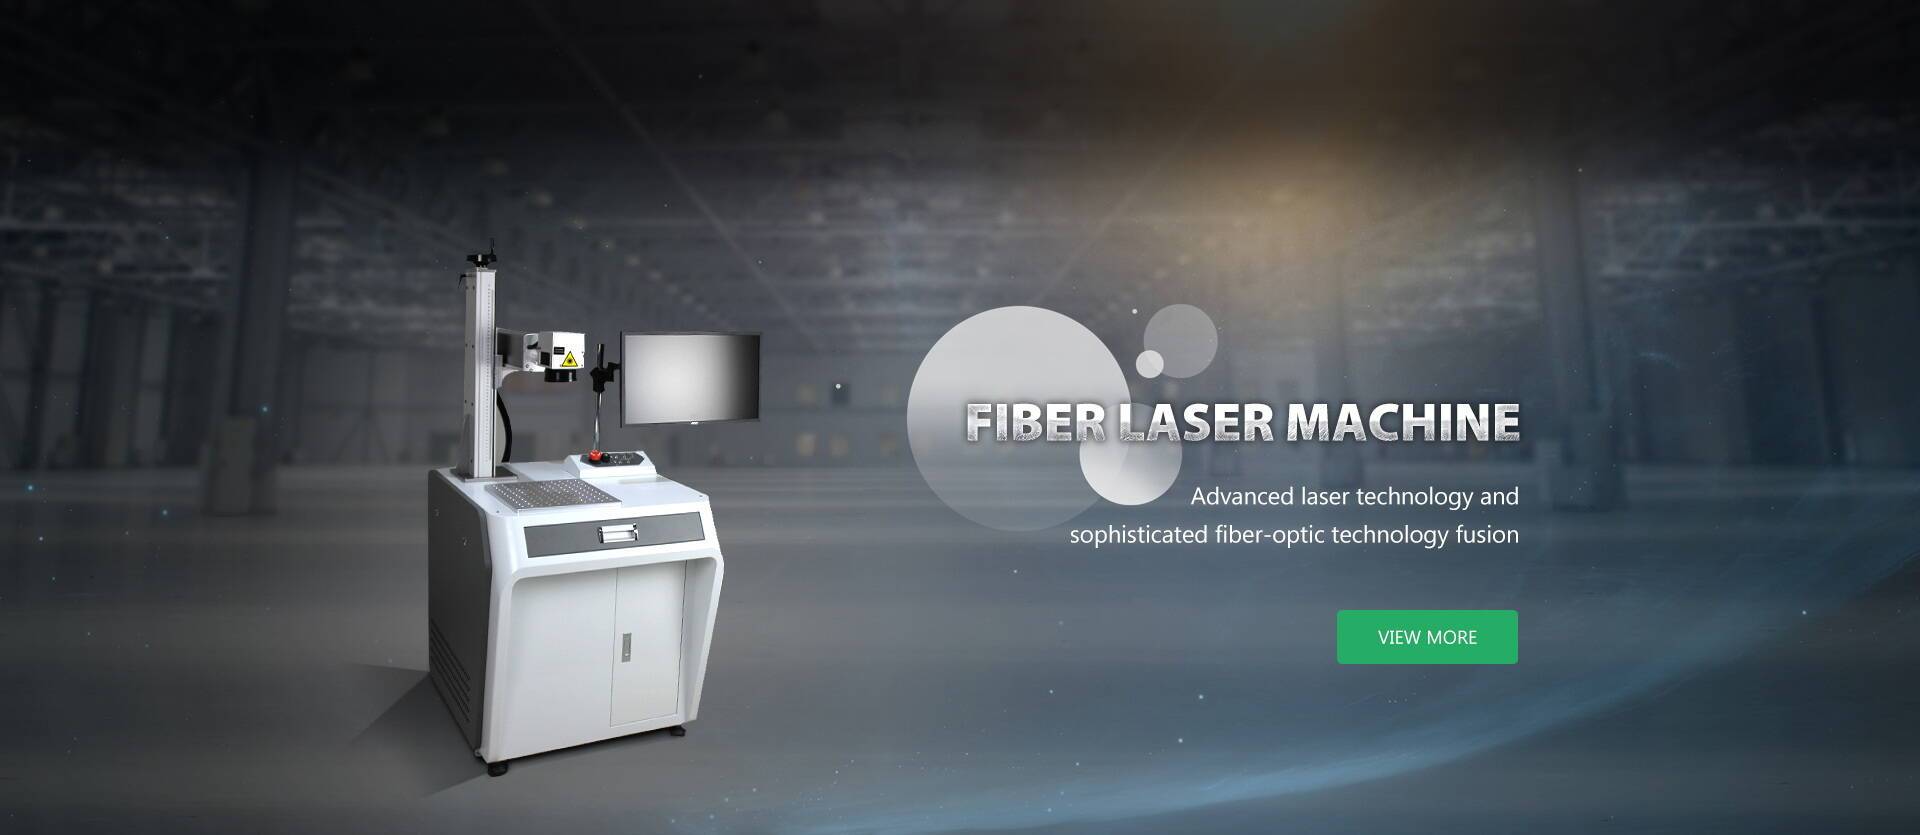 Fiber laser machine